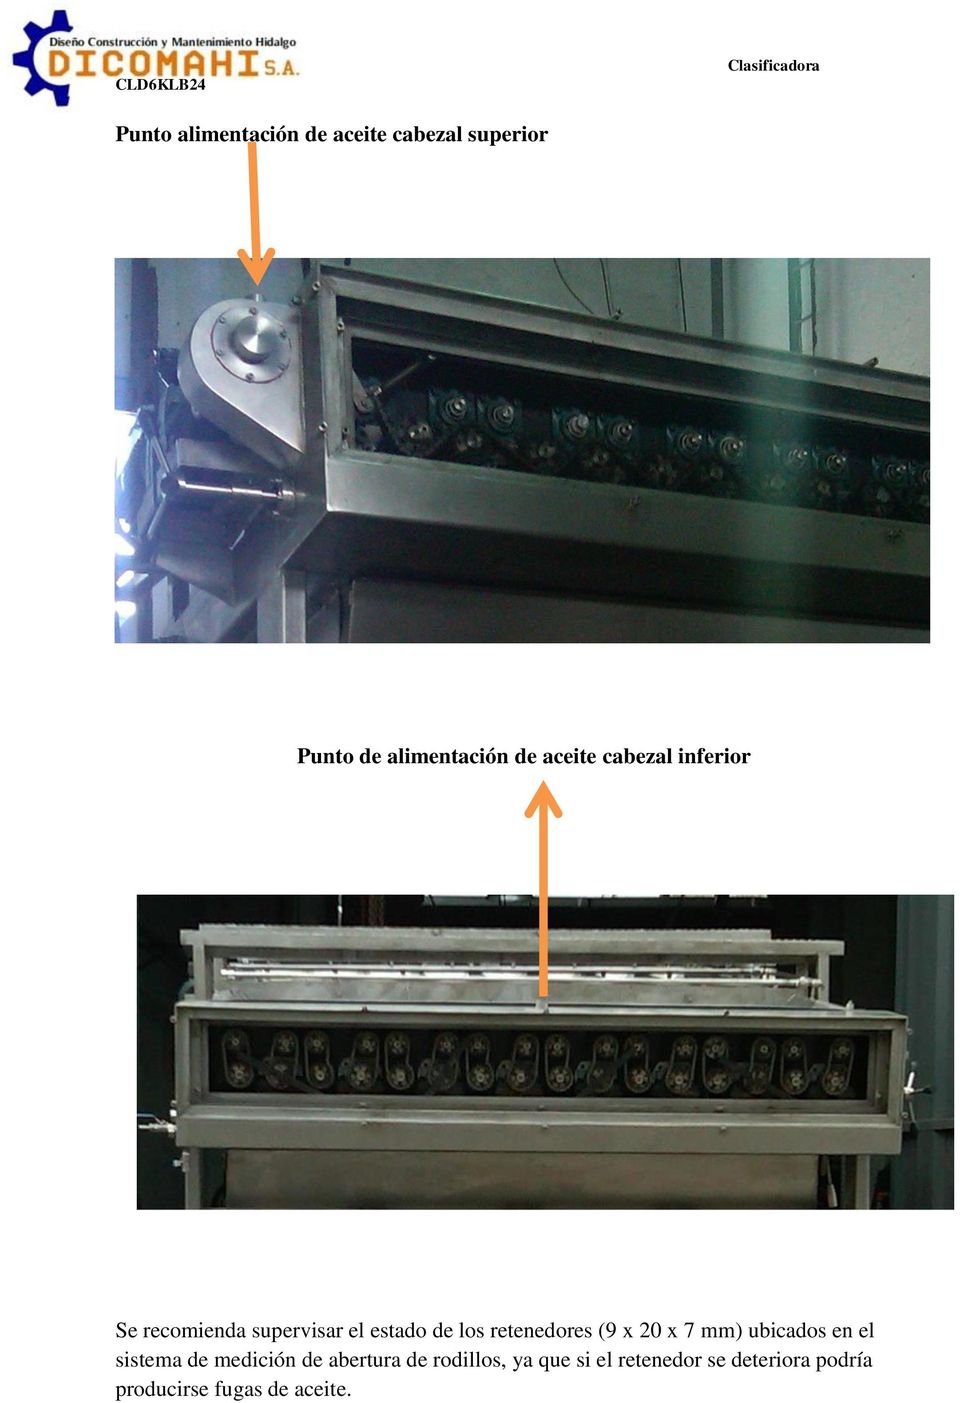 los retenedores (9 x 20 x 7 mm) ubicados en el sistema de medición de abertura